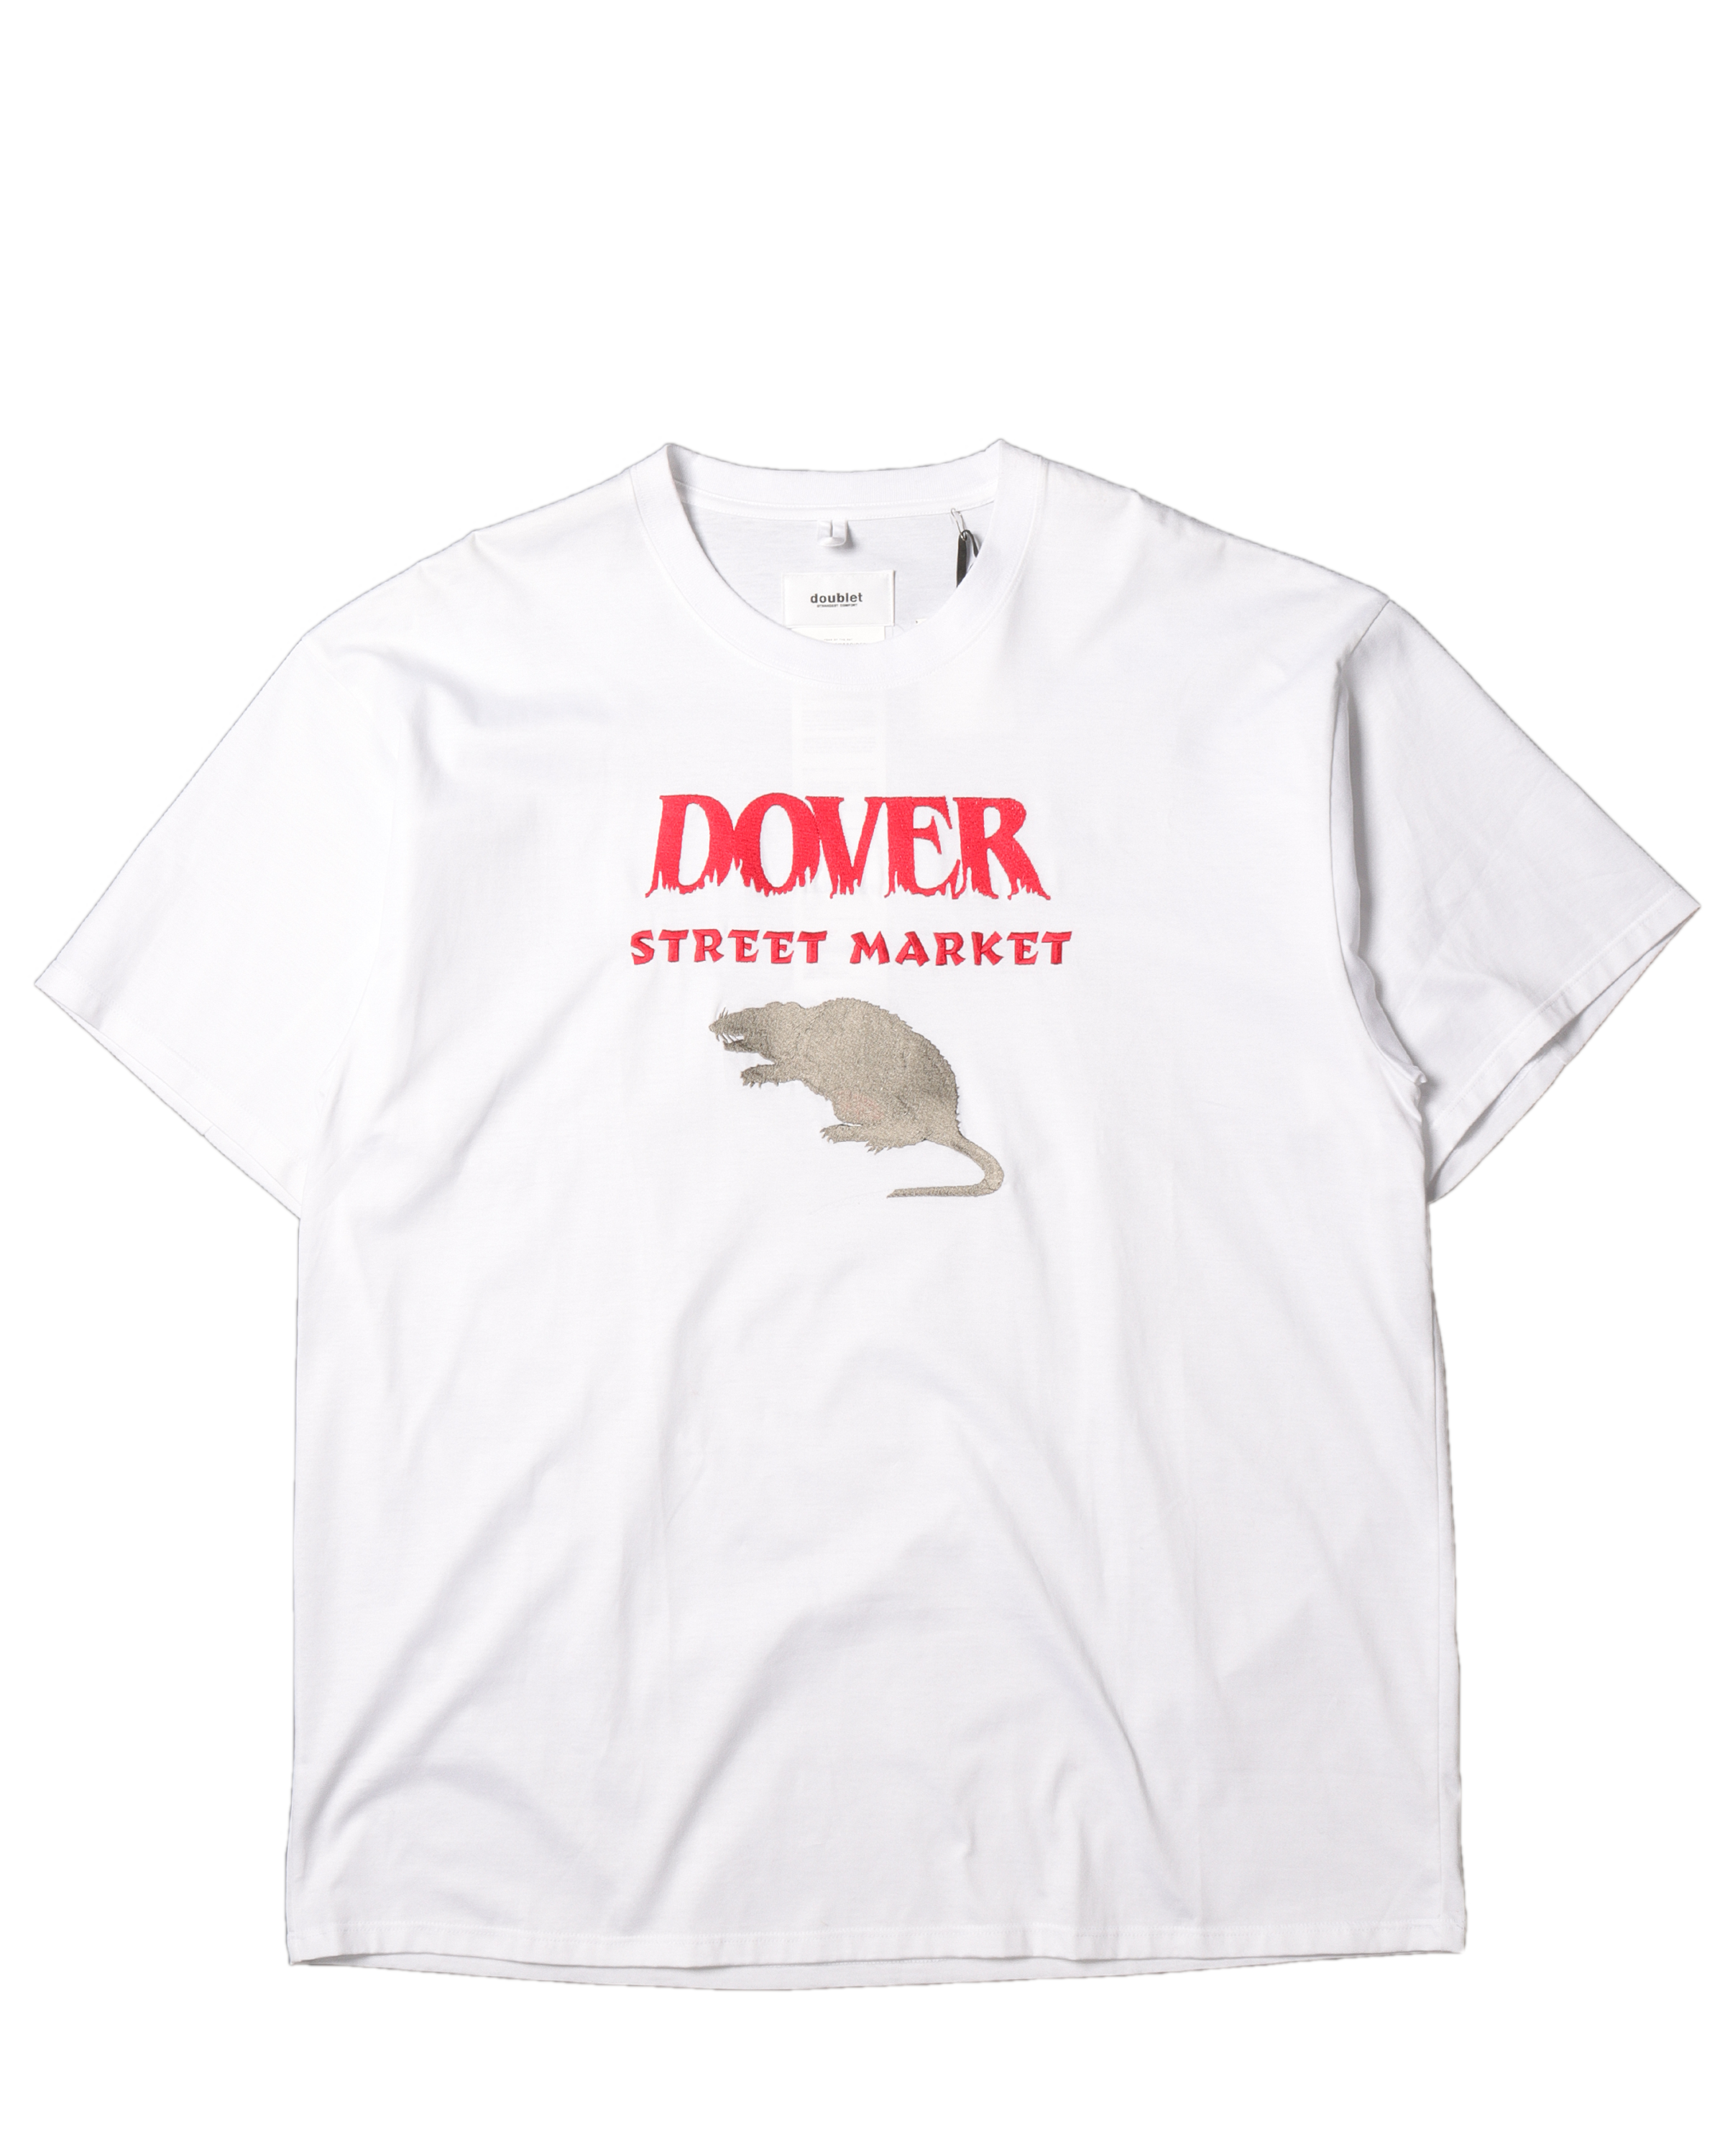 送料無料 非冷凍品同梱不可 doublet dover street market tシャツ